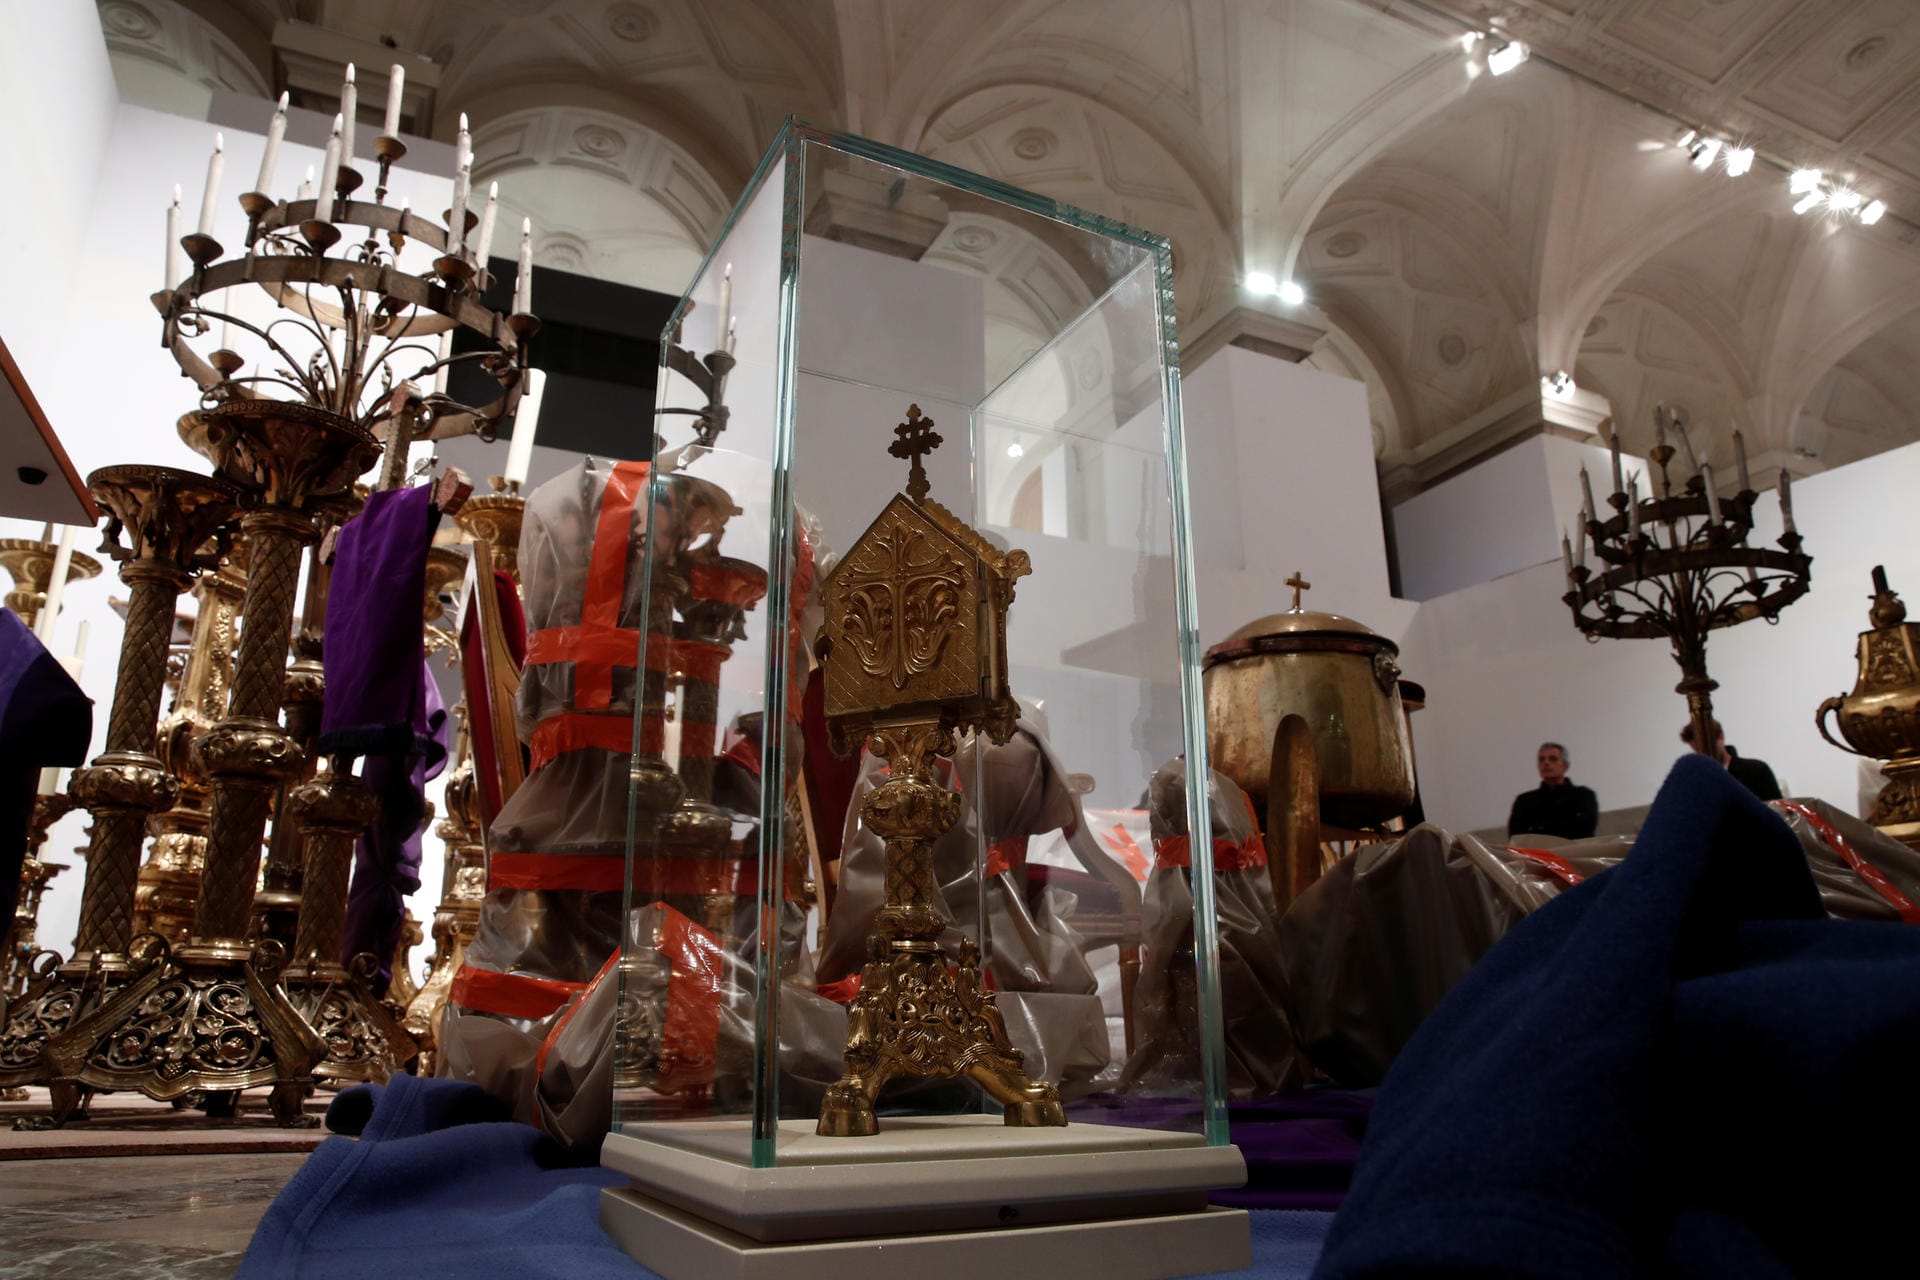 Kunstwerke aus Notre-Dame: Die geretteten Stücke aus Notre-Dame waren in Transportfahrzeugen von der beschädigten Kirche in das Pariser Rathaus gebracht worden.